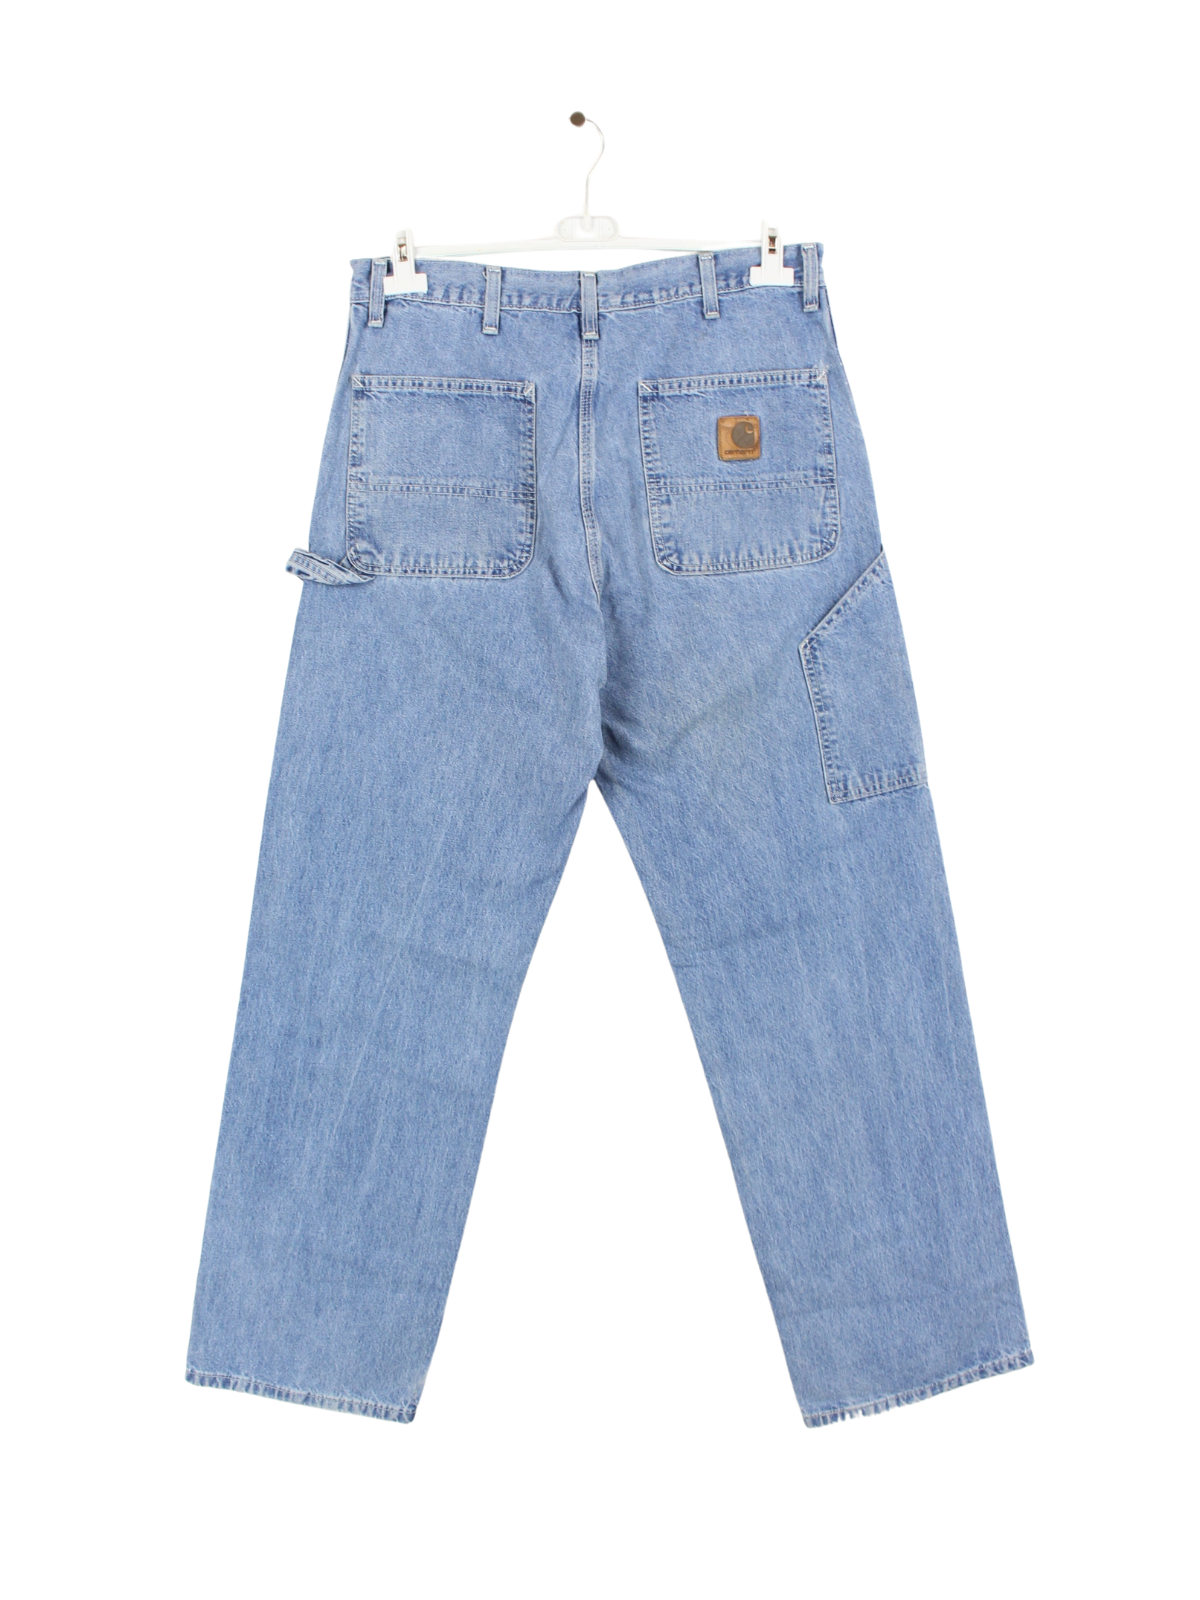 Carhartt Carpenter Jeans Blau W34 L32